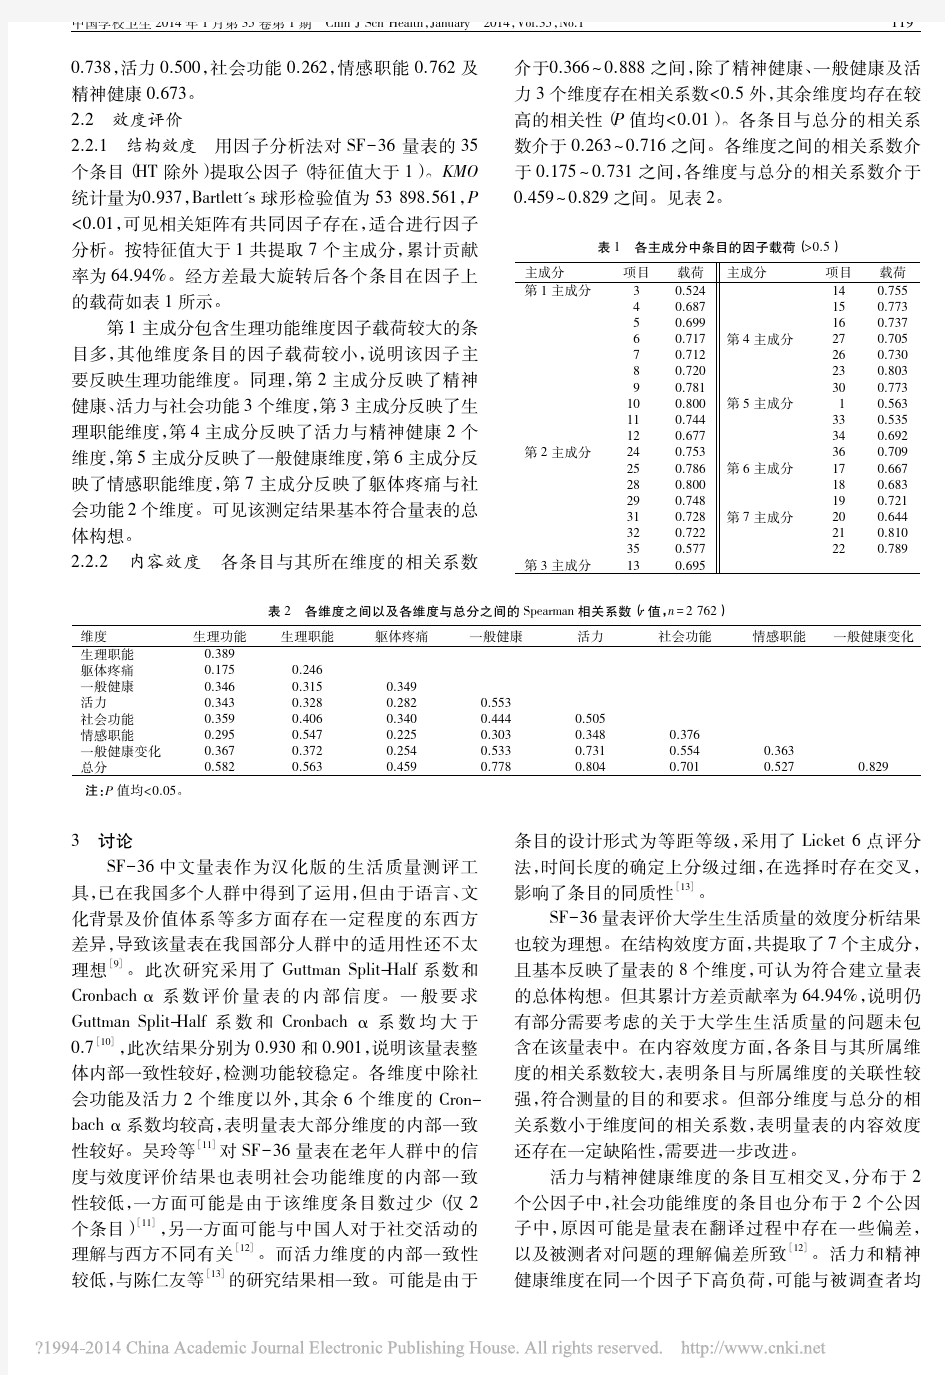 SF_36量表用于大学生生活质量调查的信效度评价_王琪